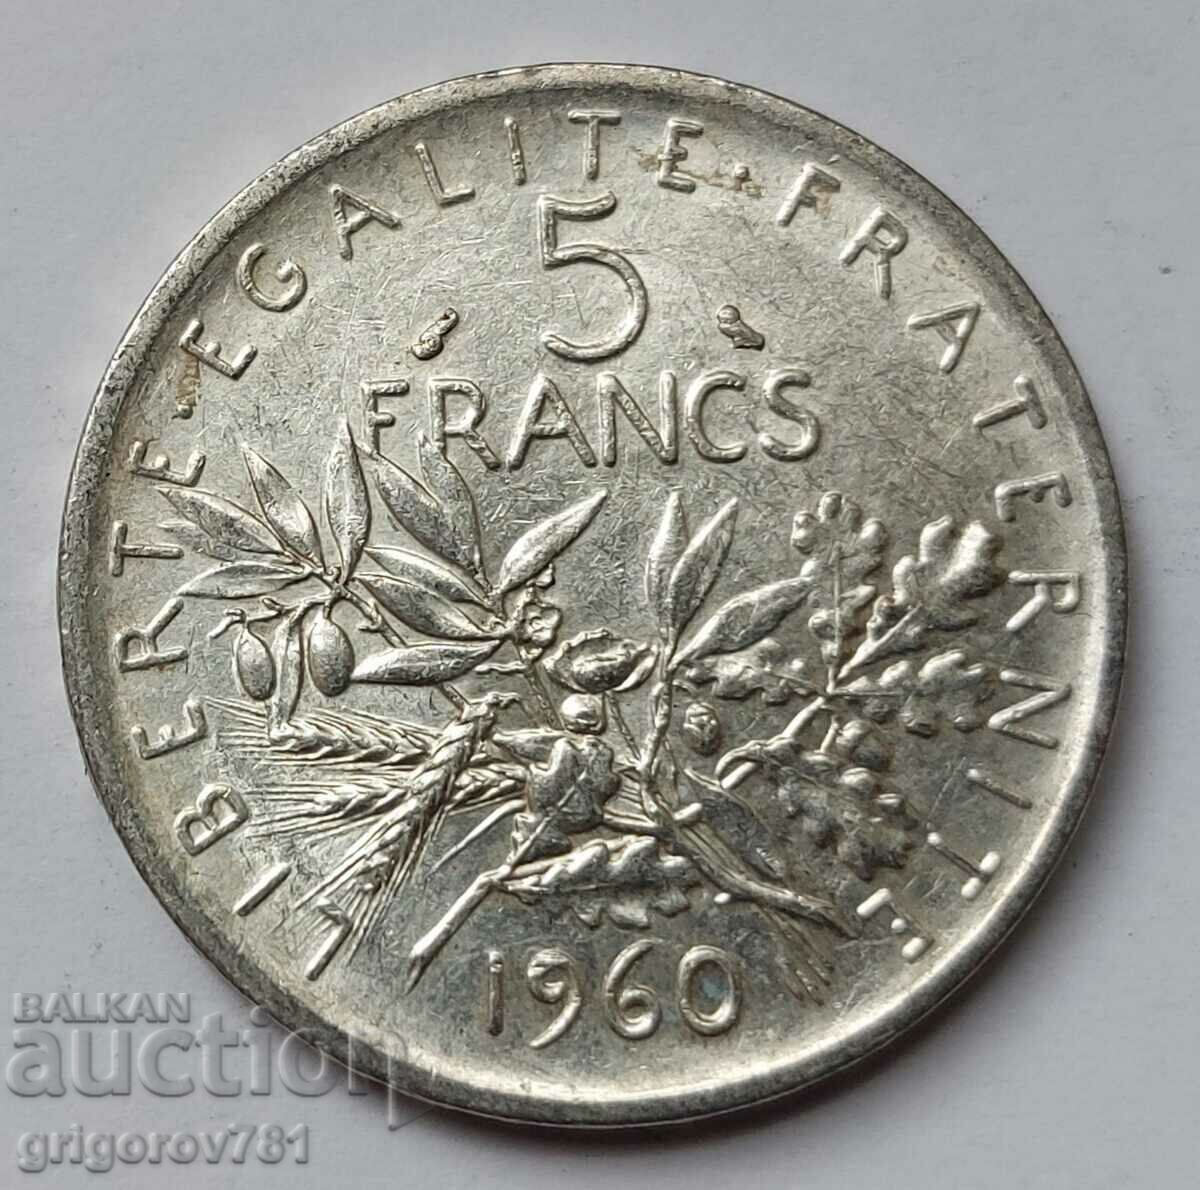 5 Φράγκα Ασήμι Γαλλία 1960 - Ασημένιο νόμισμα #9